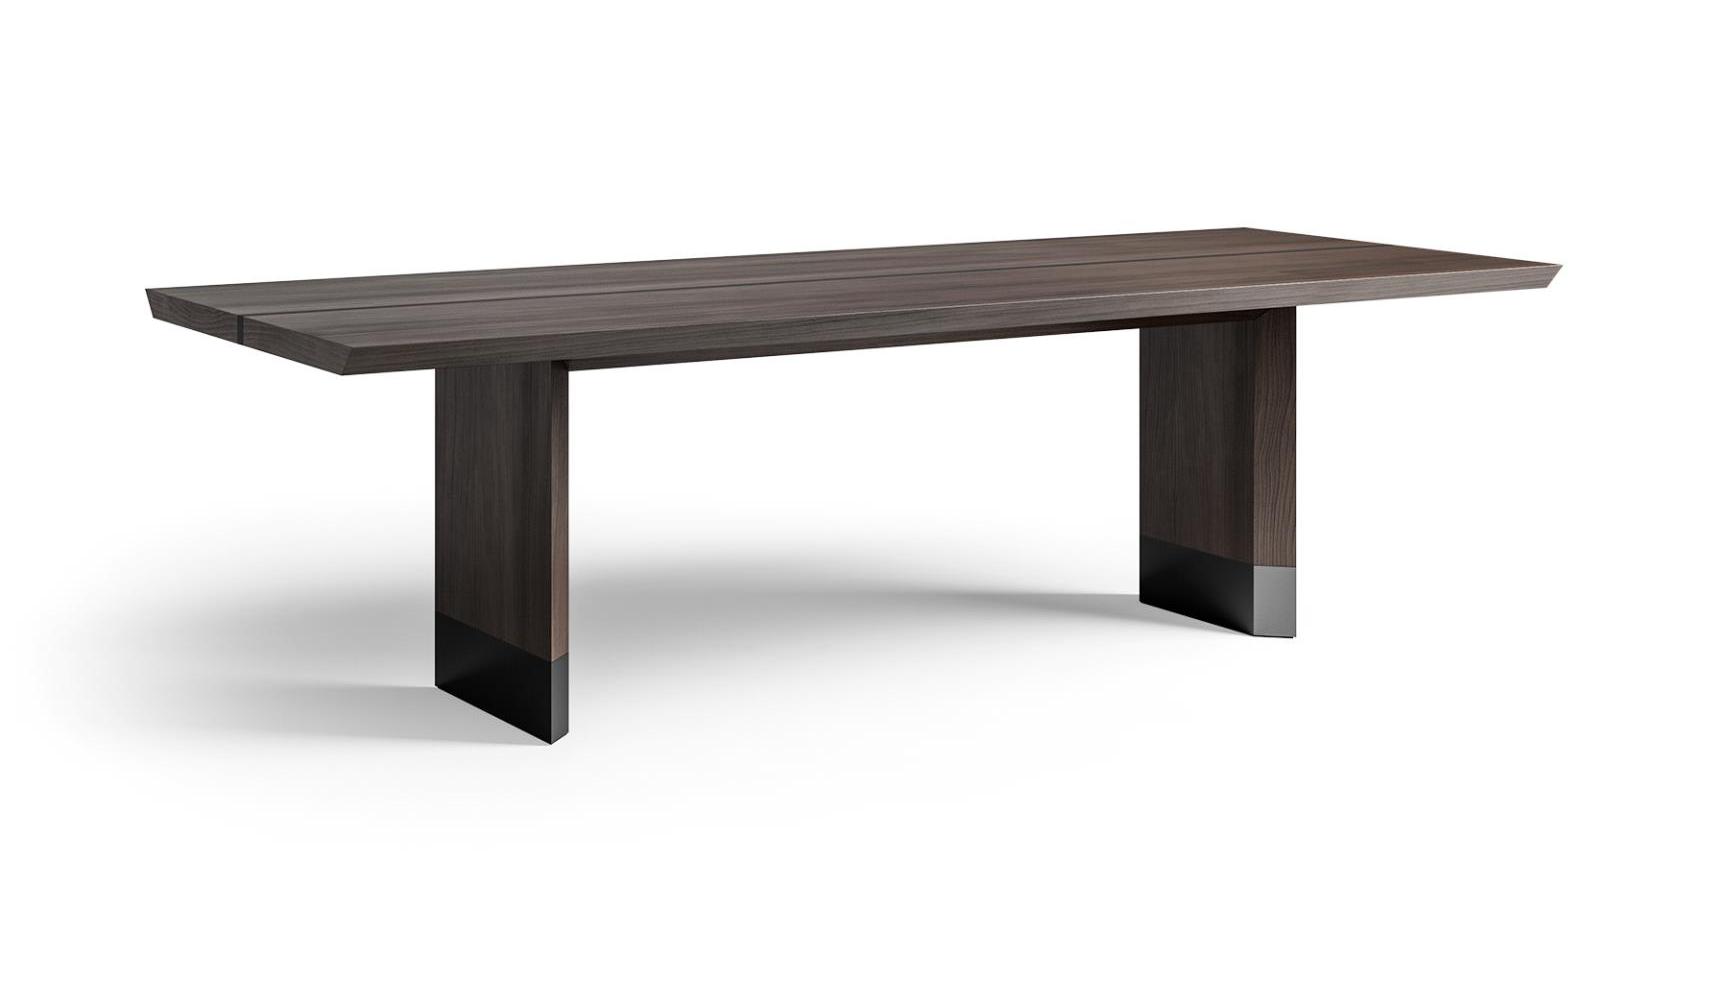 Cedar Veneer Table 250 with Wood & Metal Accents